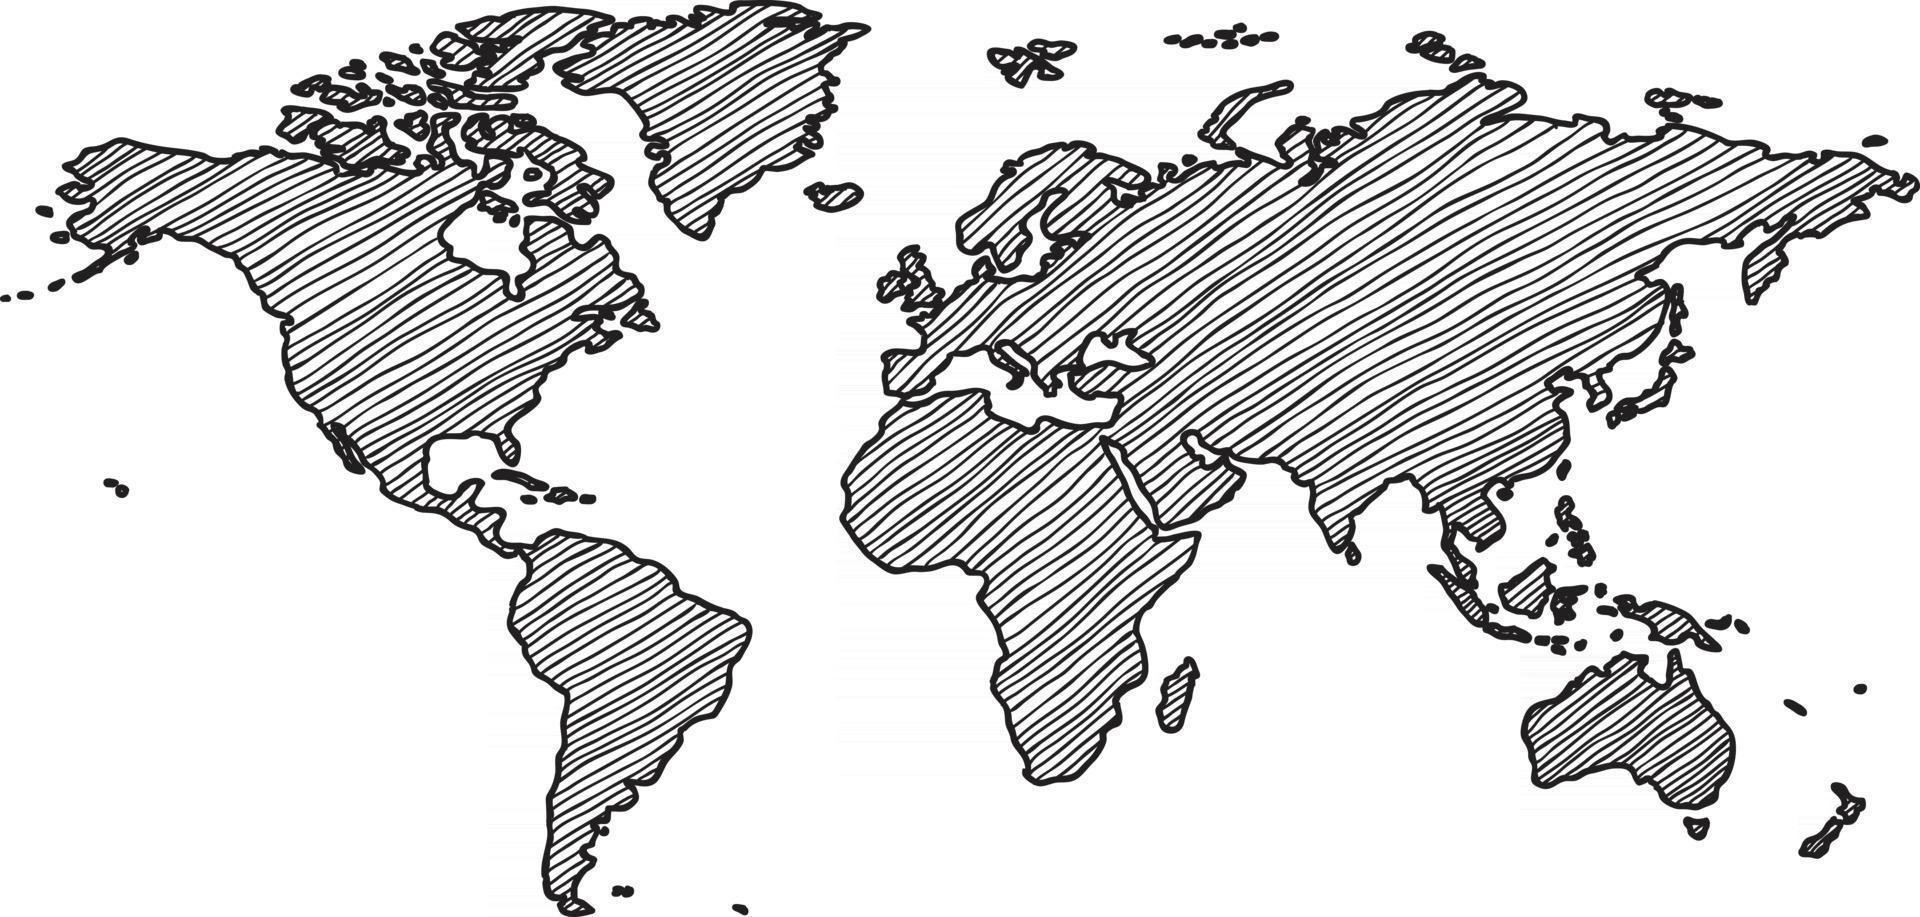 Bosquejo del mapa del mundo a mano alzada sobre fondo blanco. vector